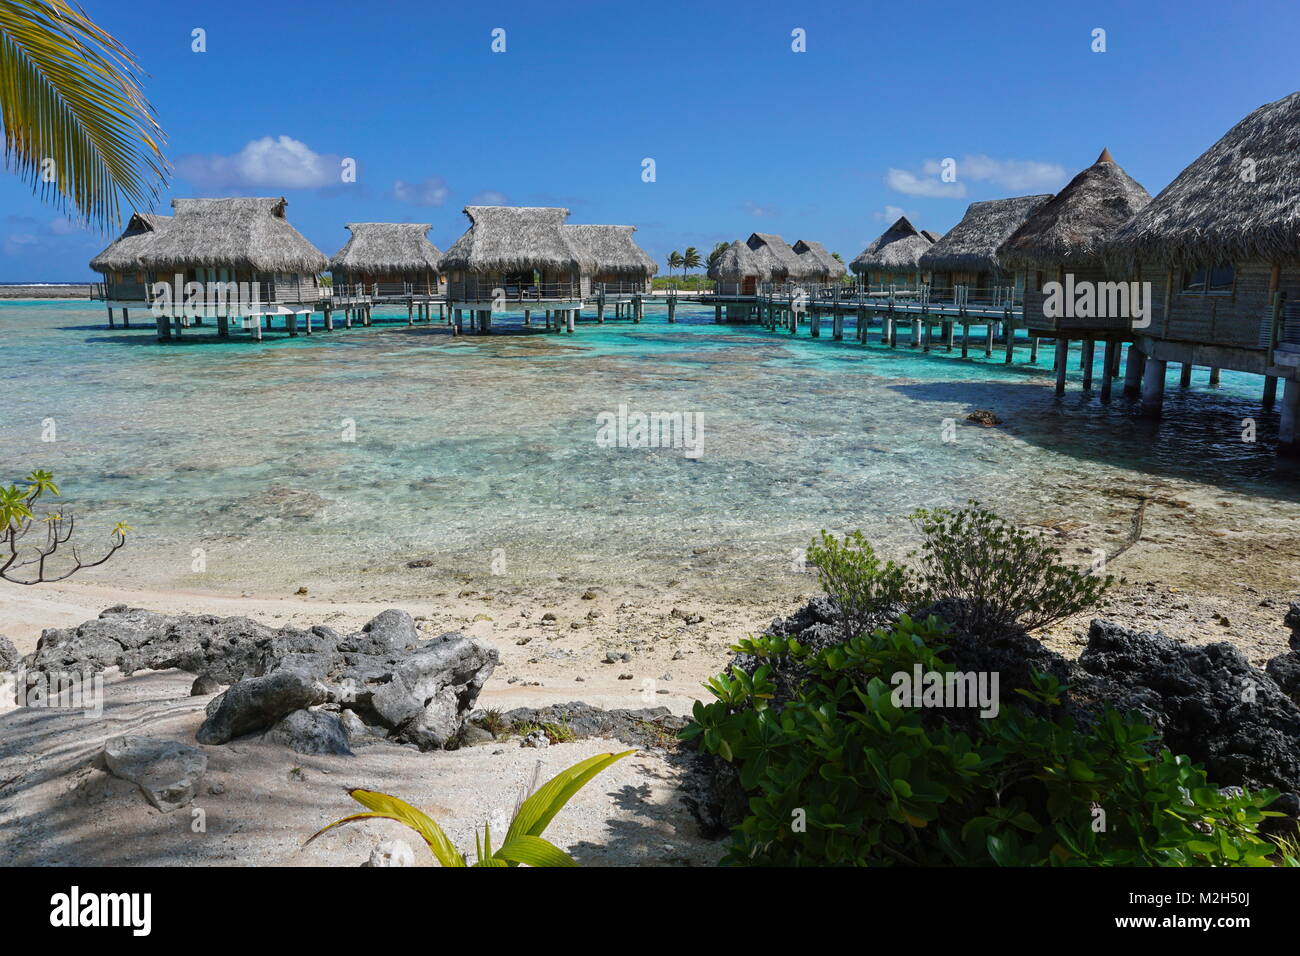 Tropical Island resort avec des bungalows sur pilotis dans le lagon, l'atoll de Tikehau, Tuamotu, Polynésie Française, océan Pacifique, Océanie Banque D'Images